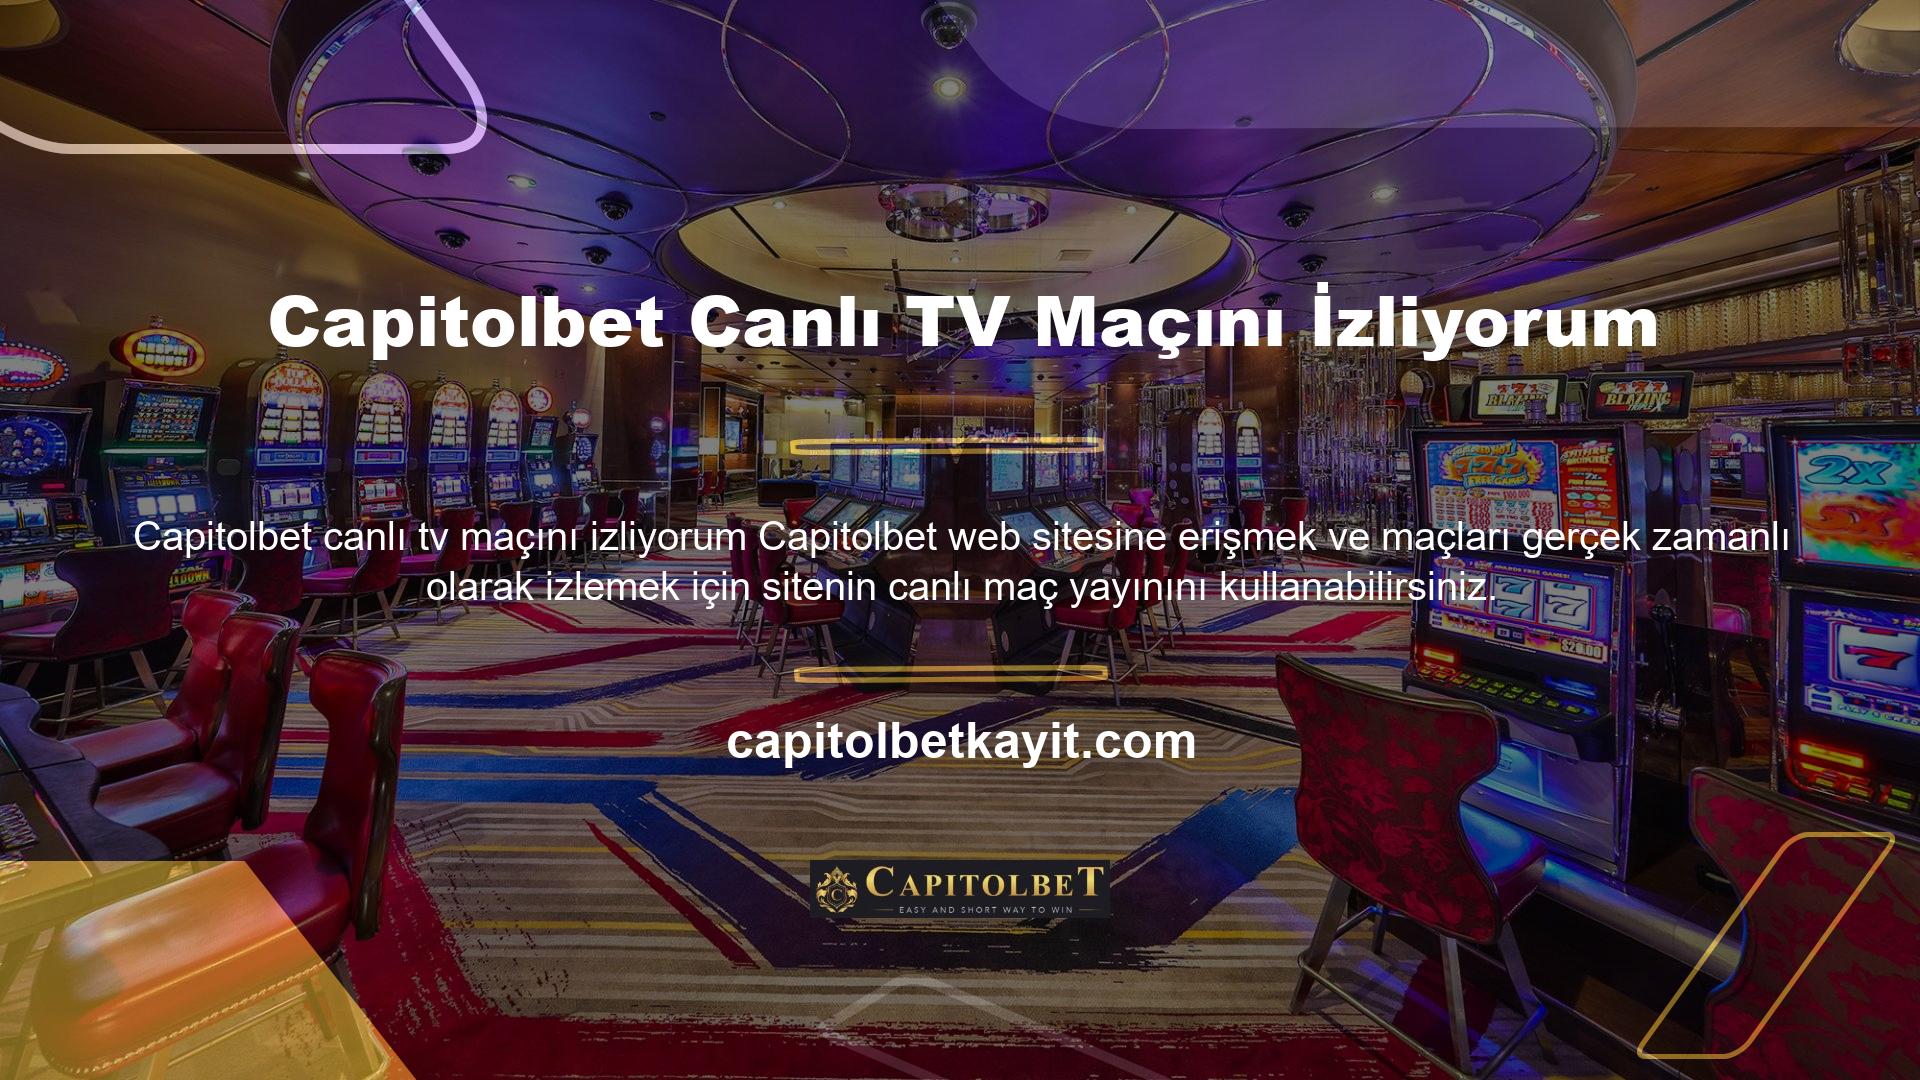 Capitolbet casino'nun canlı TV maç izleme adresine hemen ulaşabilirsiniz